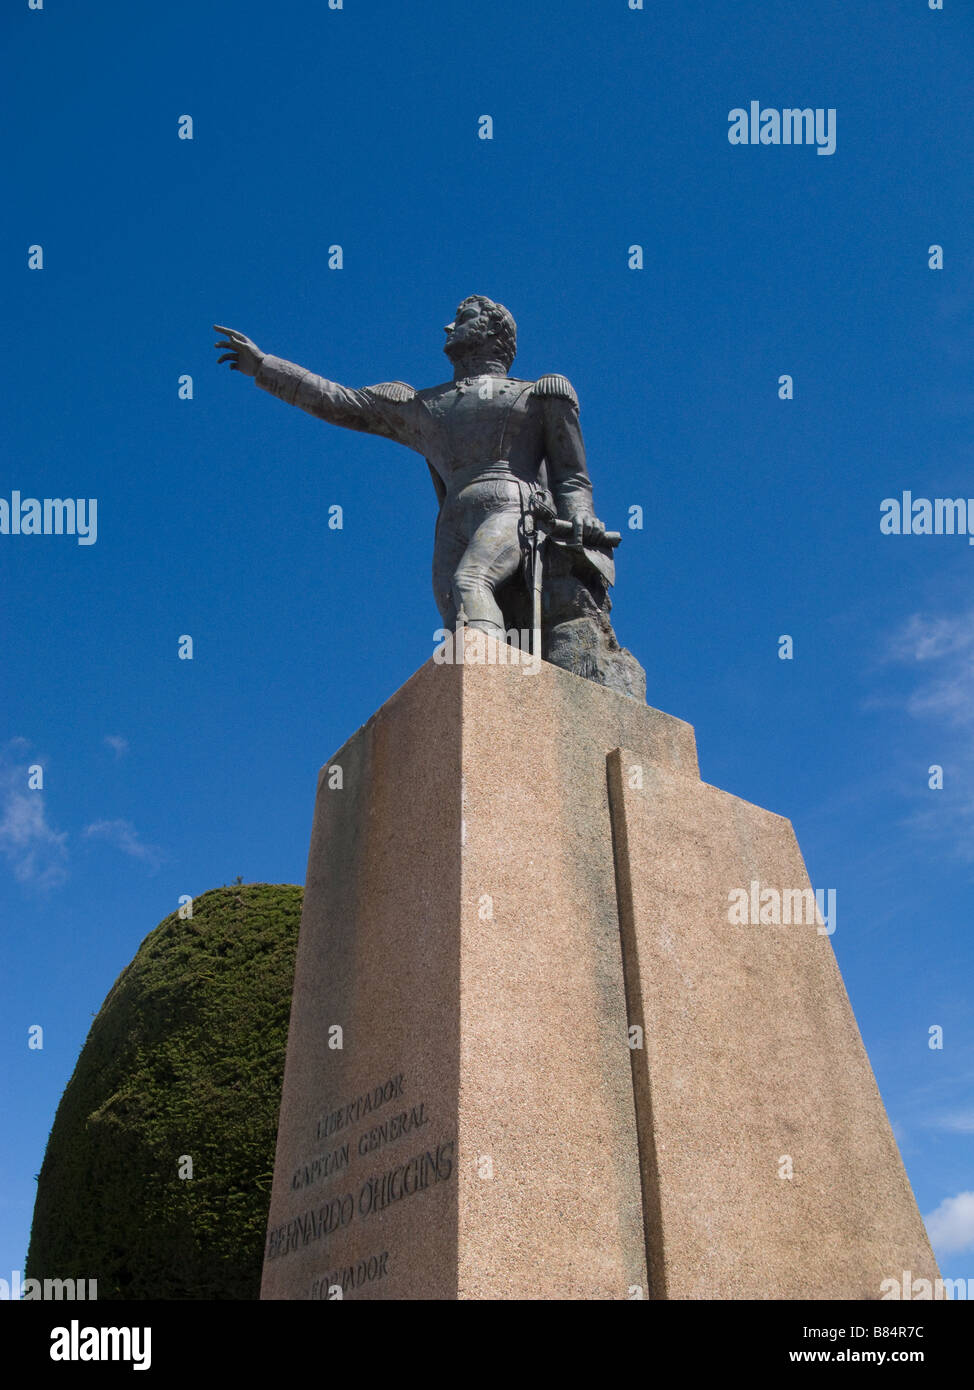 Monument to gen. Bernardo O'Higgins, Punta Arenas, Chile Stock Photo